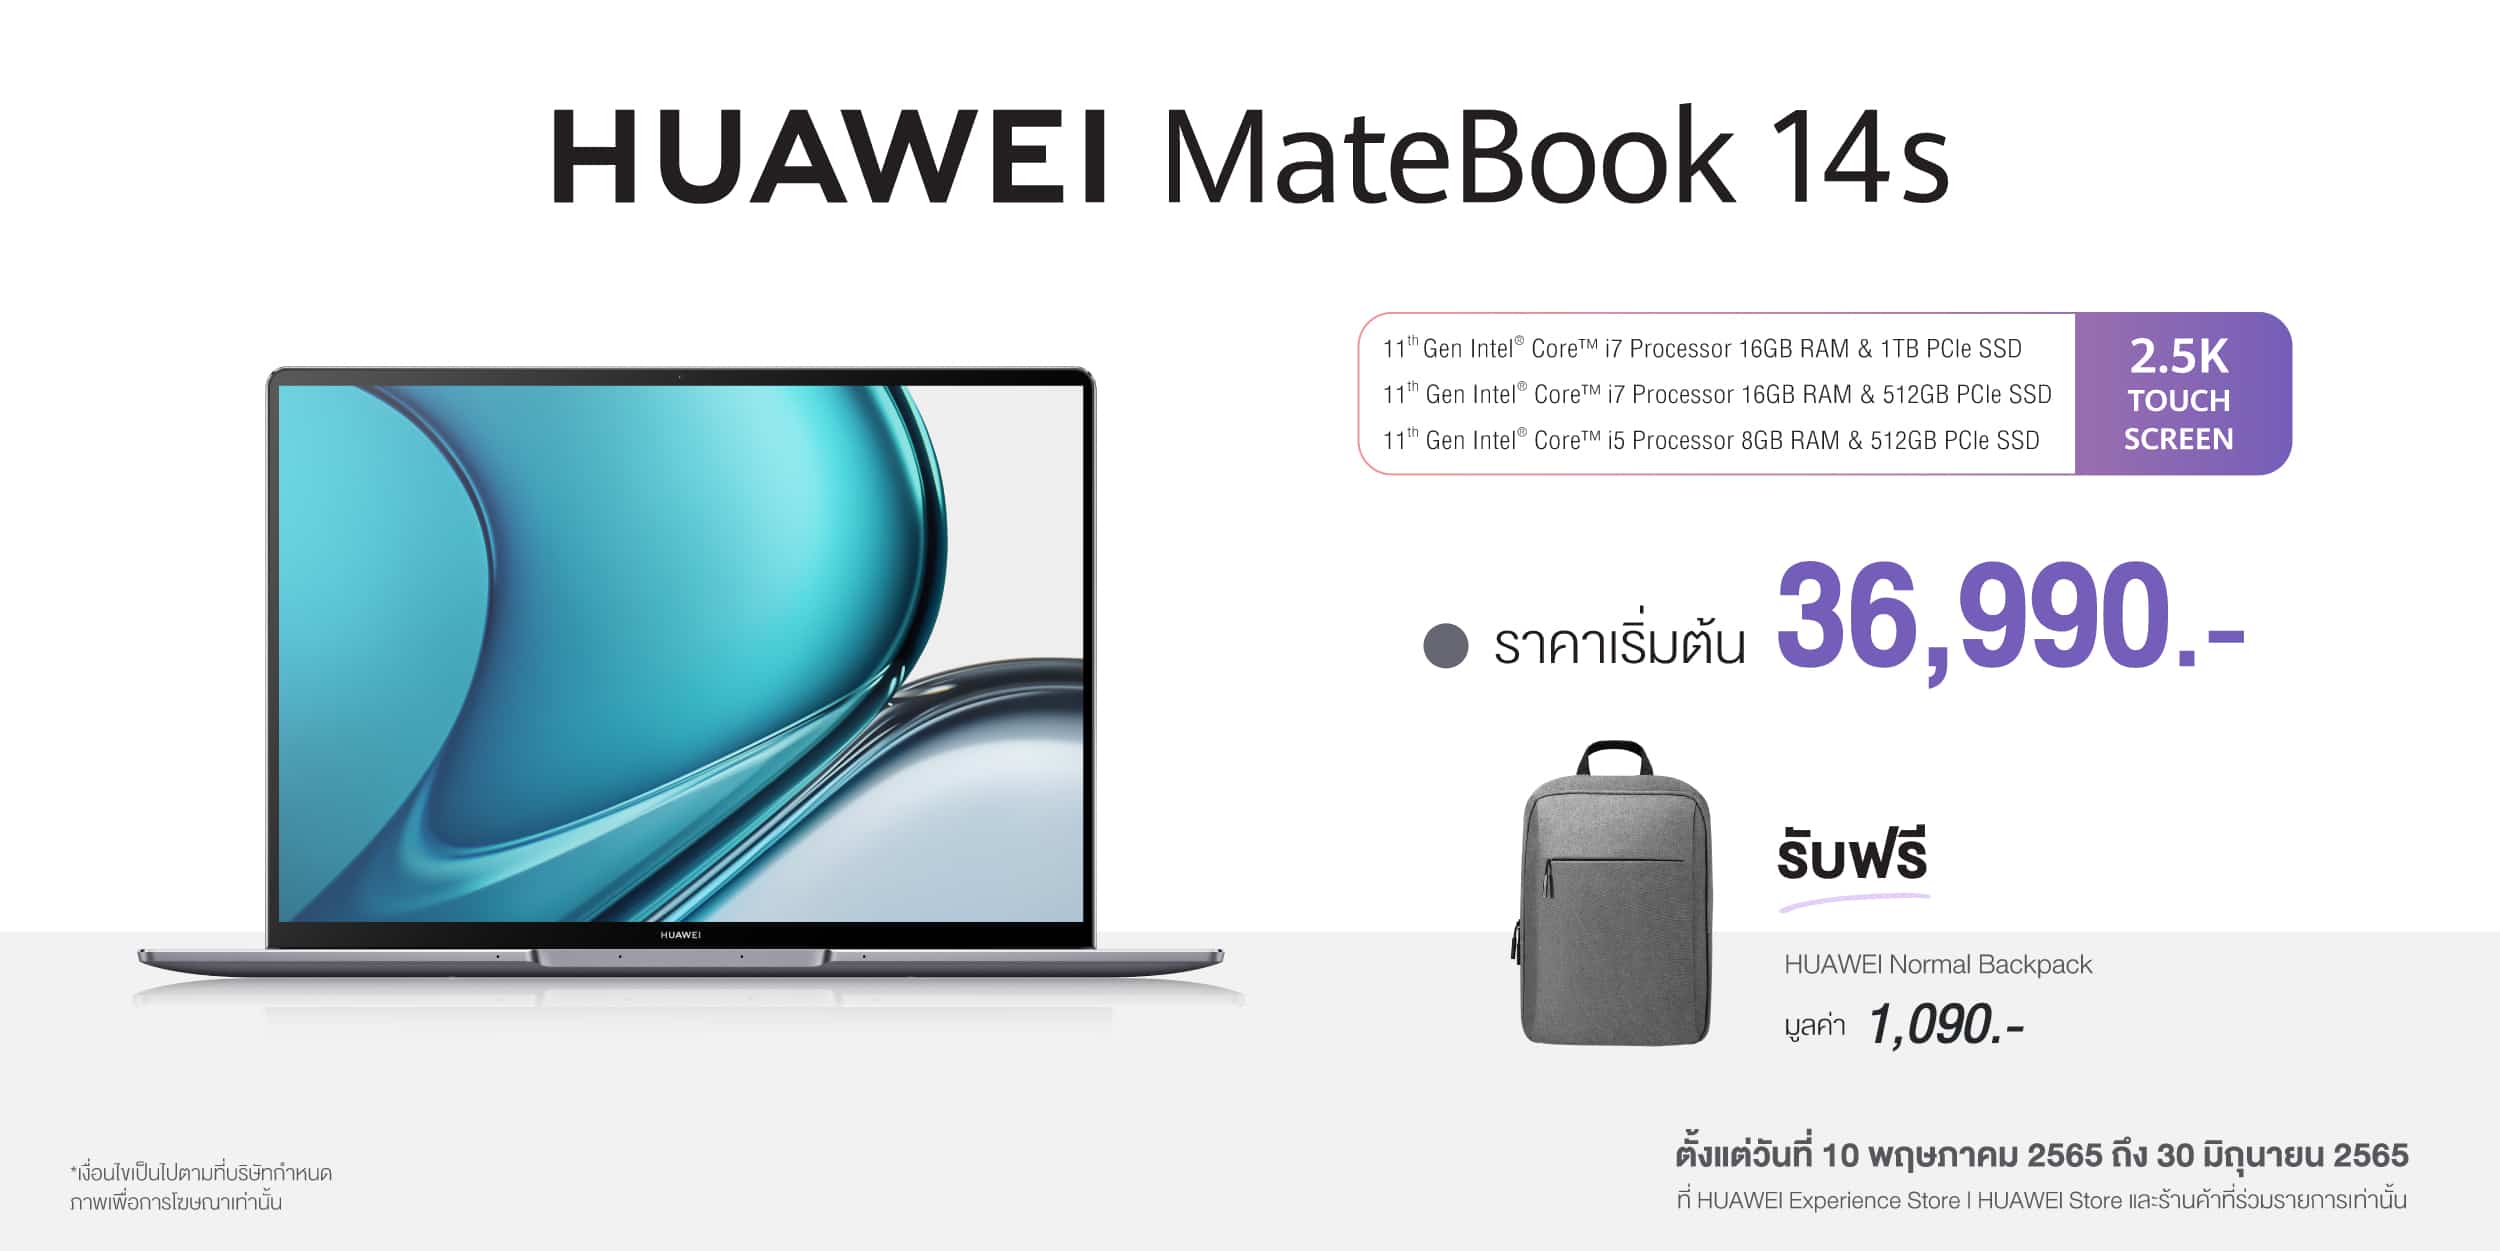 ทลายข้อจำกัดของทุกไลฟ์สไตล์การใช้งานด้วย HUAWEI MateBook 14s กับประสิทธิภาพทรงพลังที่พร้อมนำโลกแห่งแอปพลิเคชันมือถือมาสู่แล็ปท็อปของคุณ 17